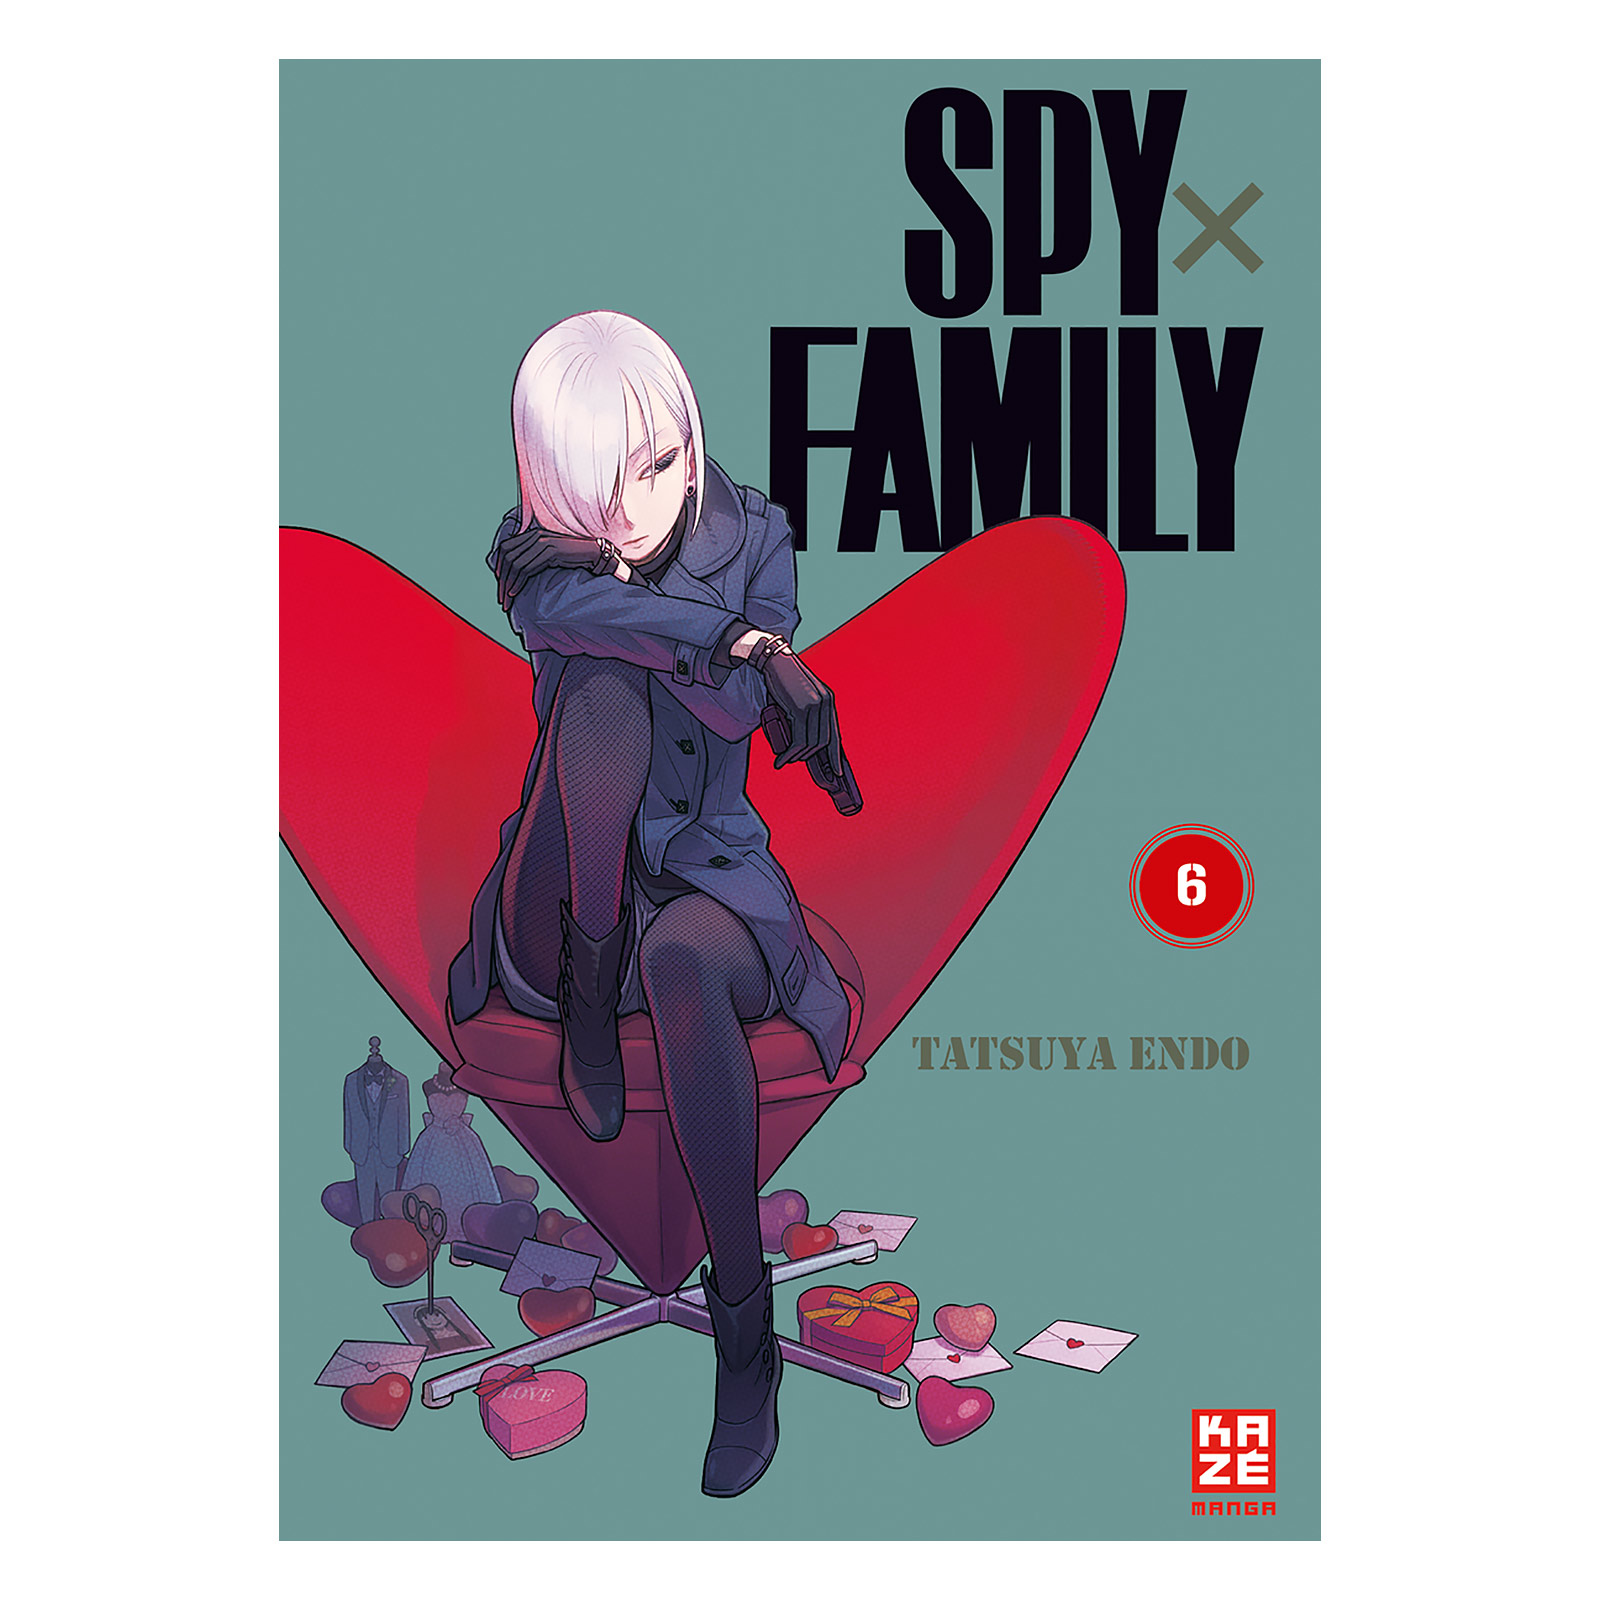 Spy x Family - Tome 6 Broché